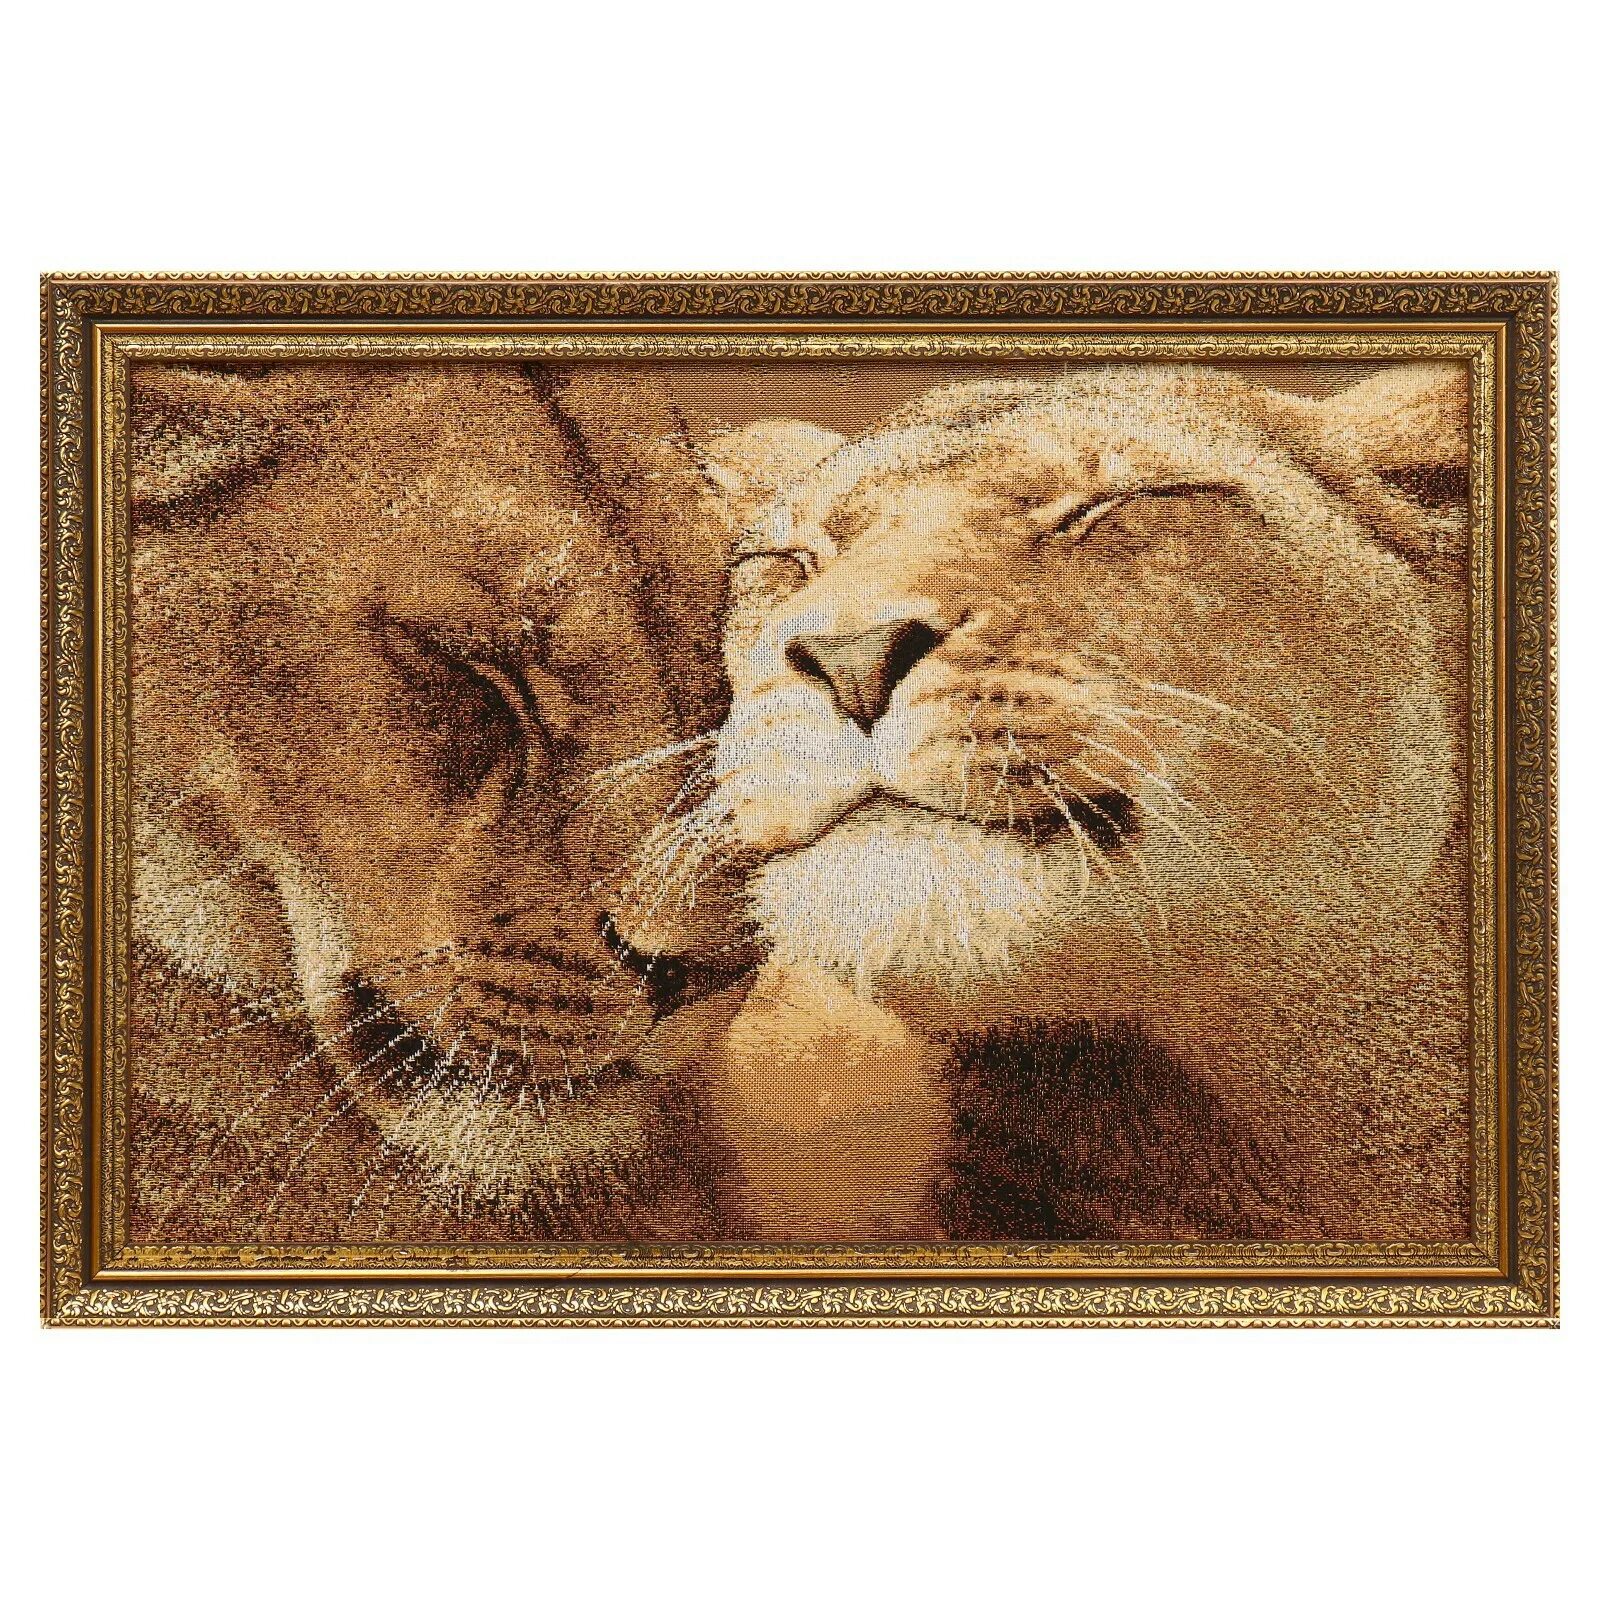 Картина верность. Картина верность со львами. Вышивка Лев и львица. Львы саванны картина гобелен. Верности 50